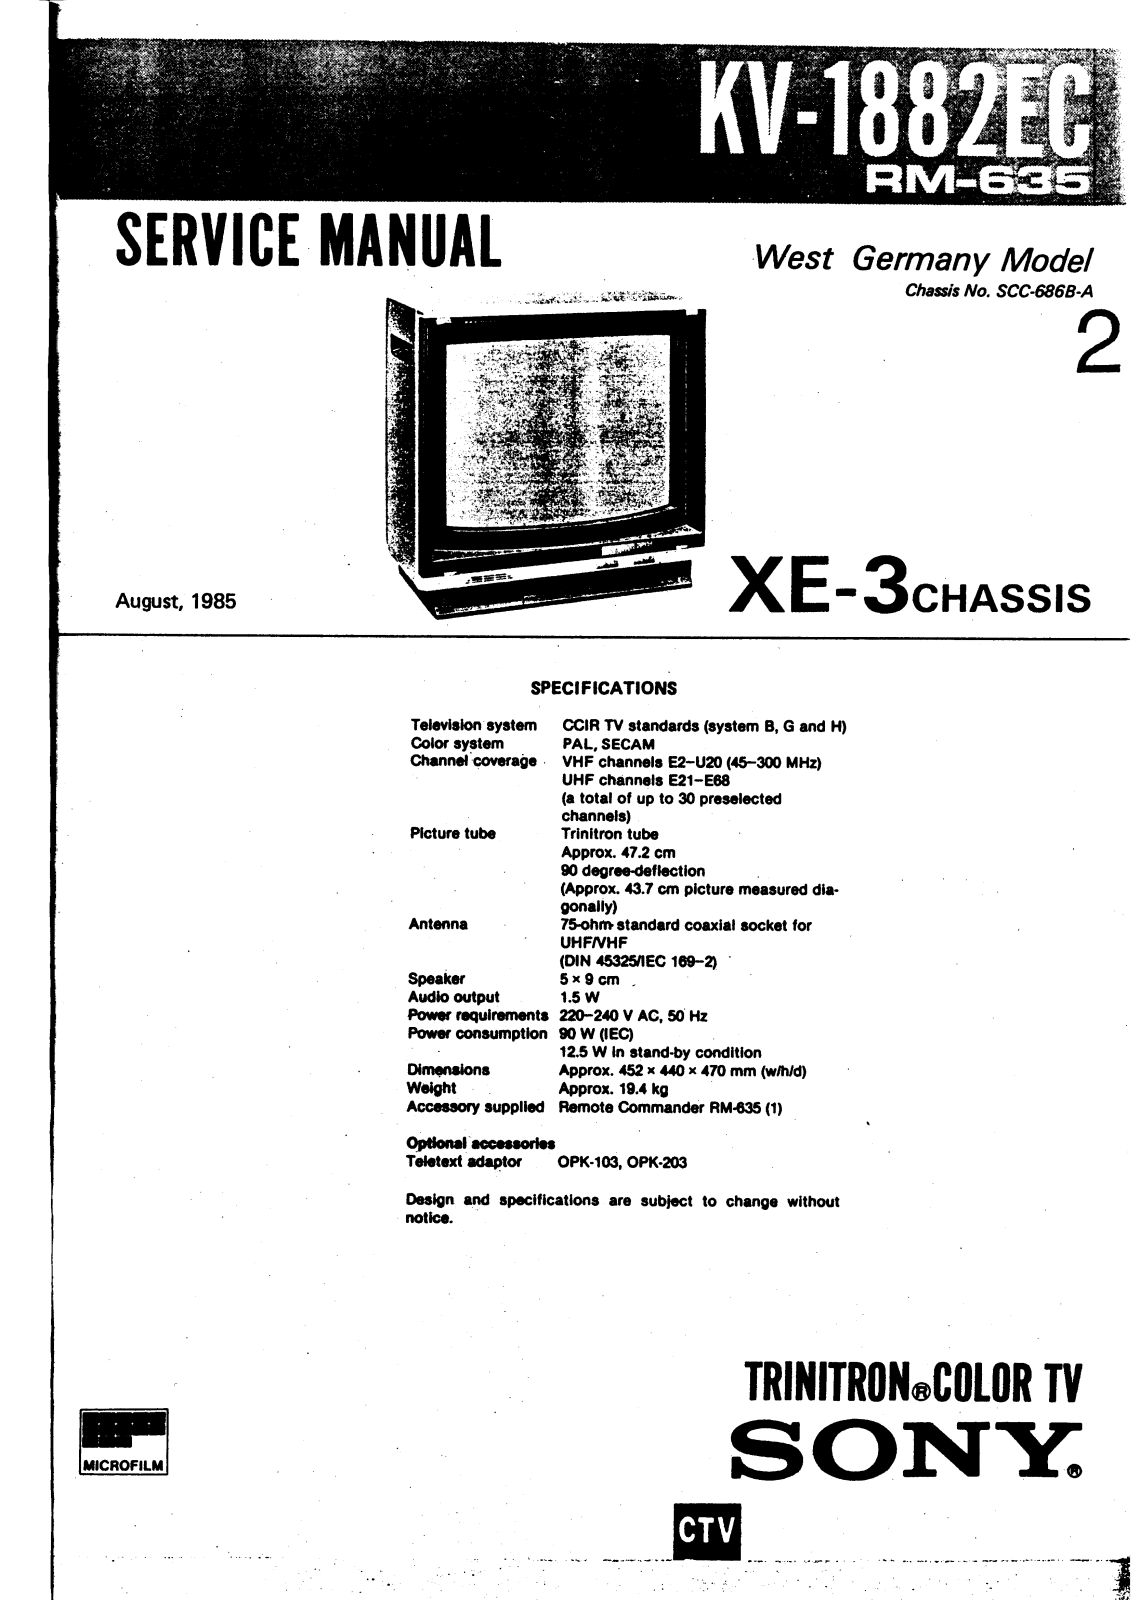 SONY kv-1882 EC Service Manual